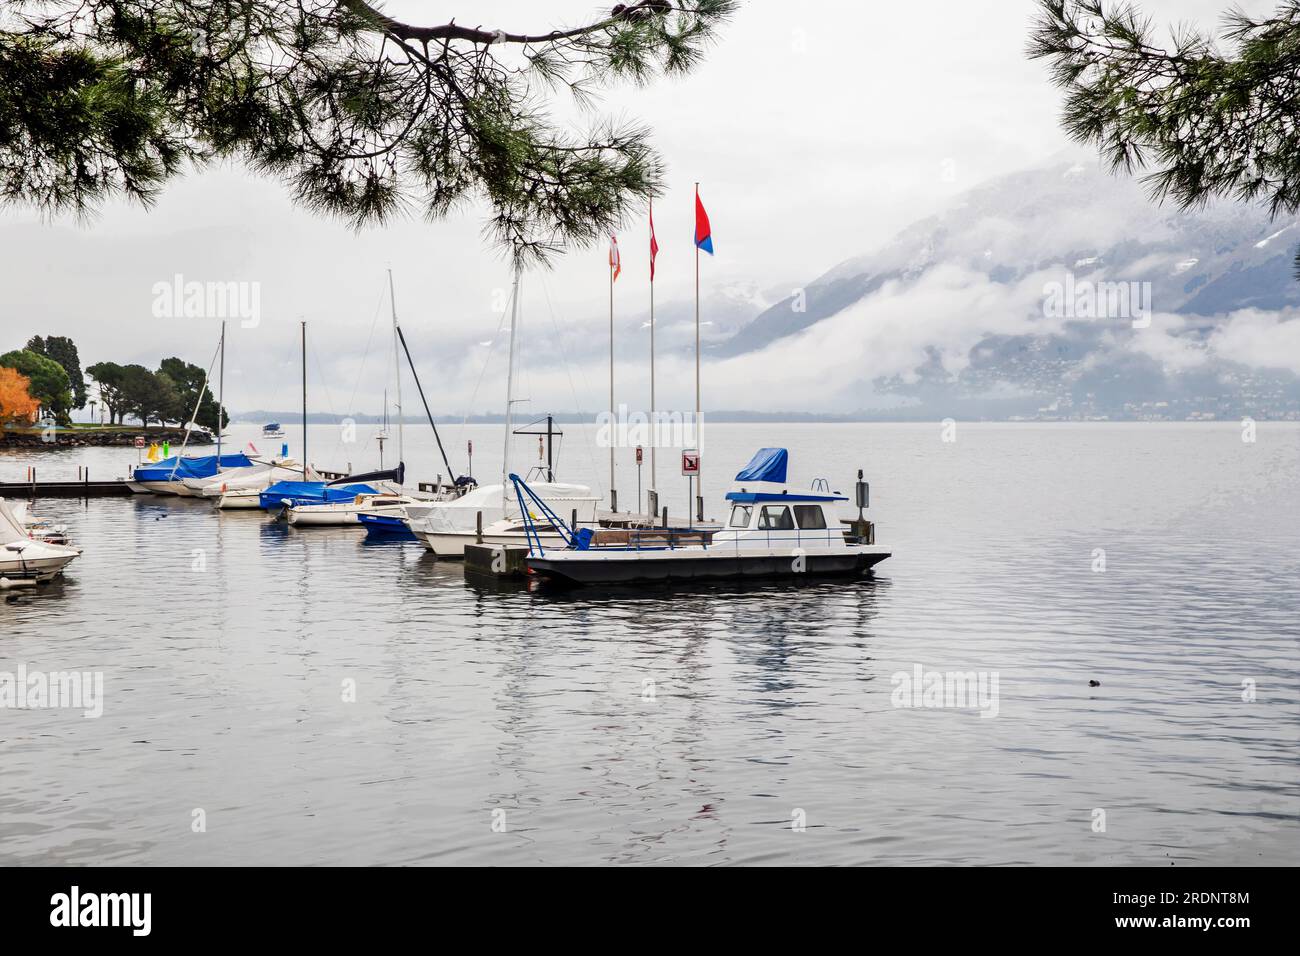 In Locarno, Schweiz, ist das Wetter wunderschön: Boote neben dem Pier und Nebel oder niedrige Wolken neben den Bergen. Kleiner Regen, kleine Ente im Wasser. Aut Stockfoto